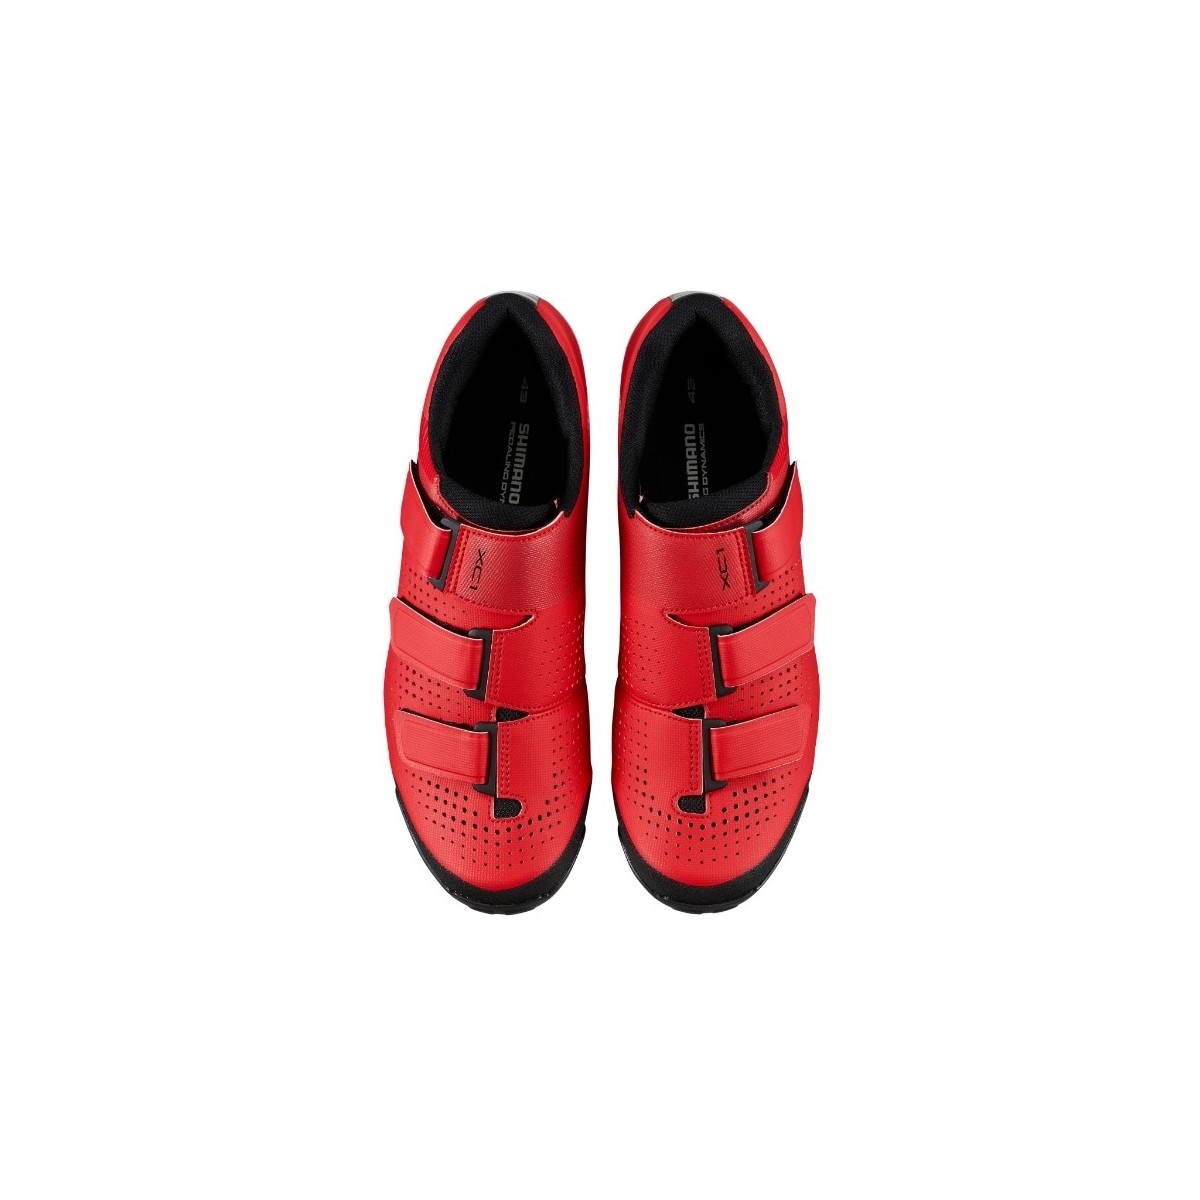 SHIMANO SH-XC100 red mtb shoes